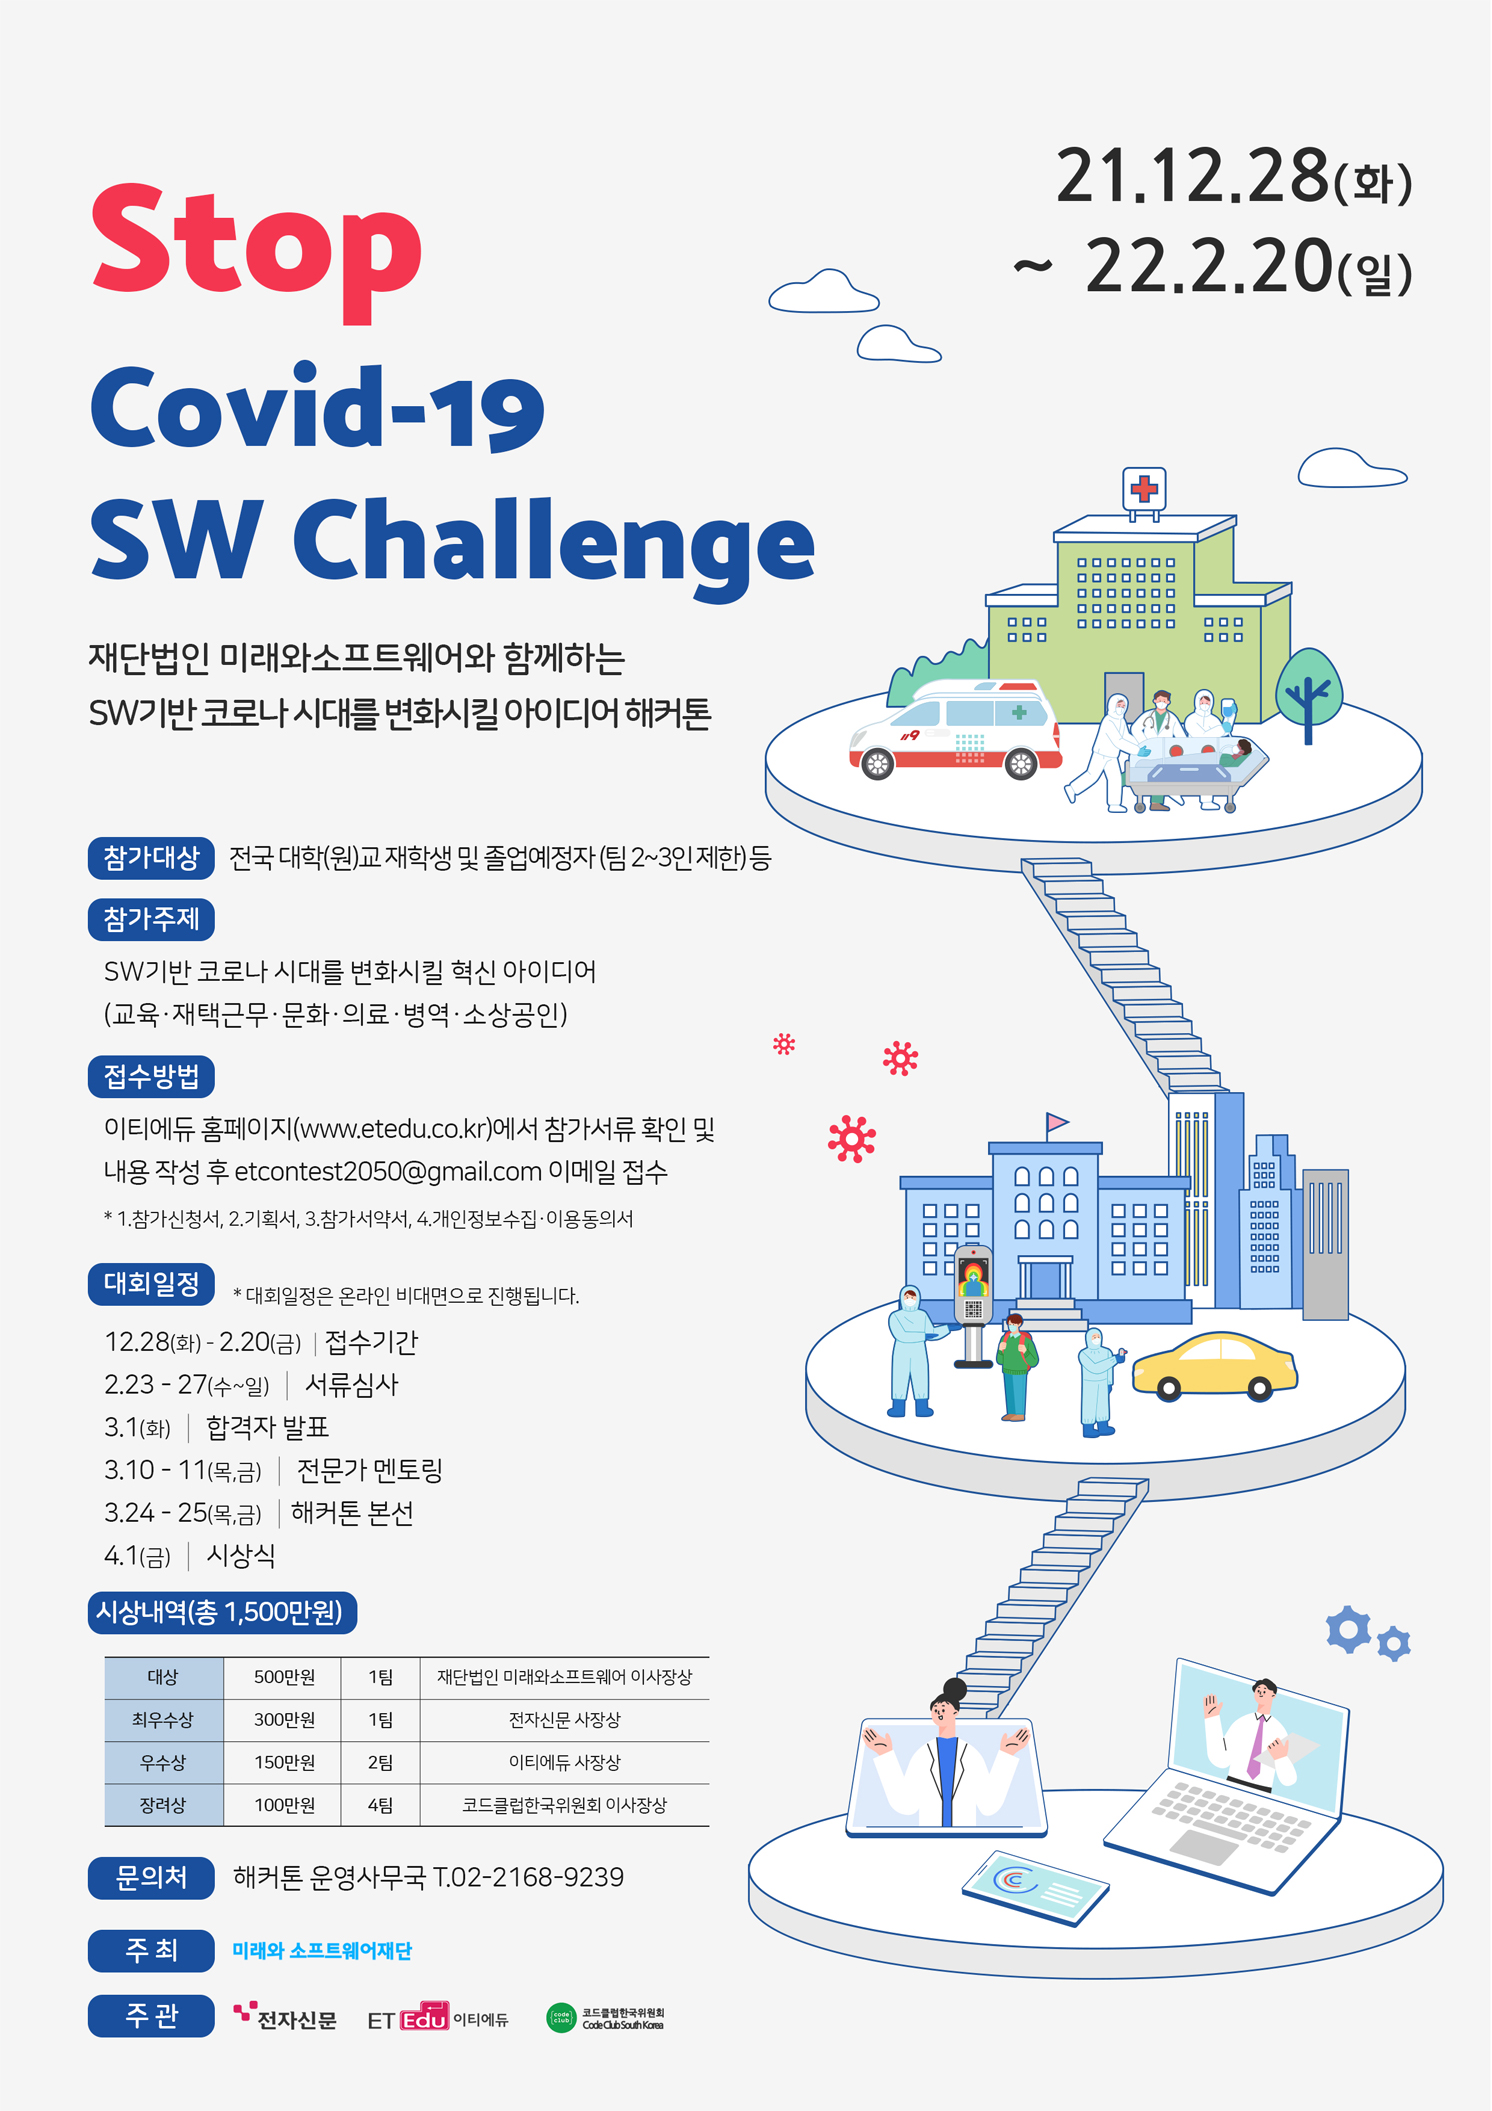 Stop Covid-19 SW Challenge 아이디어 해커톤 모집